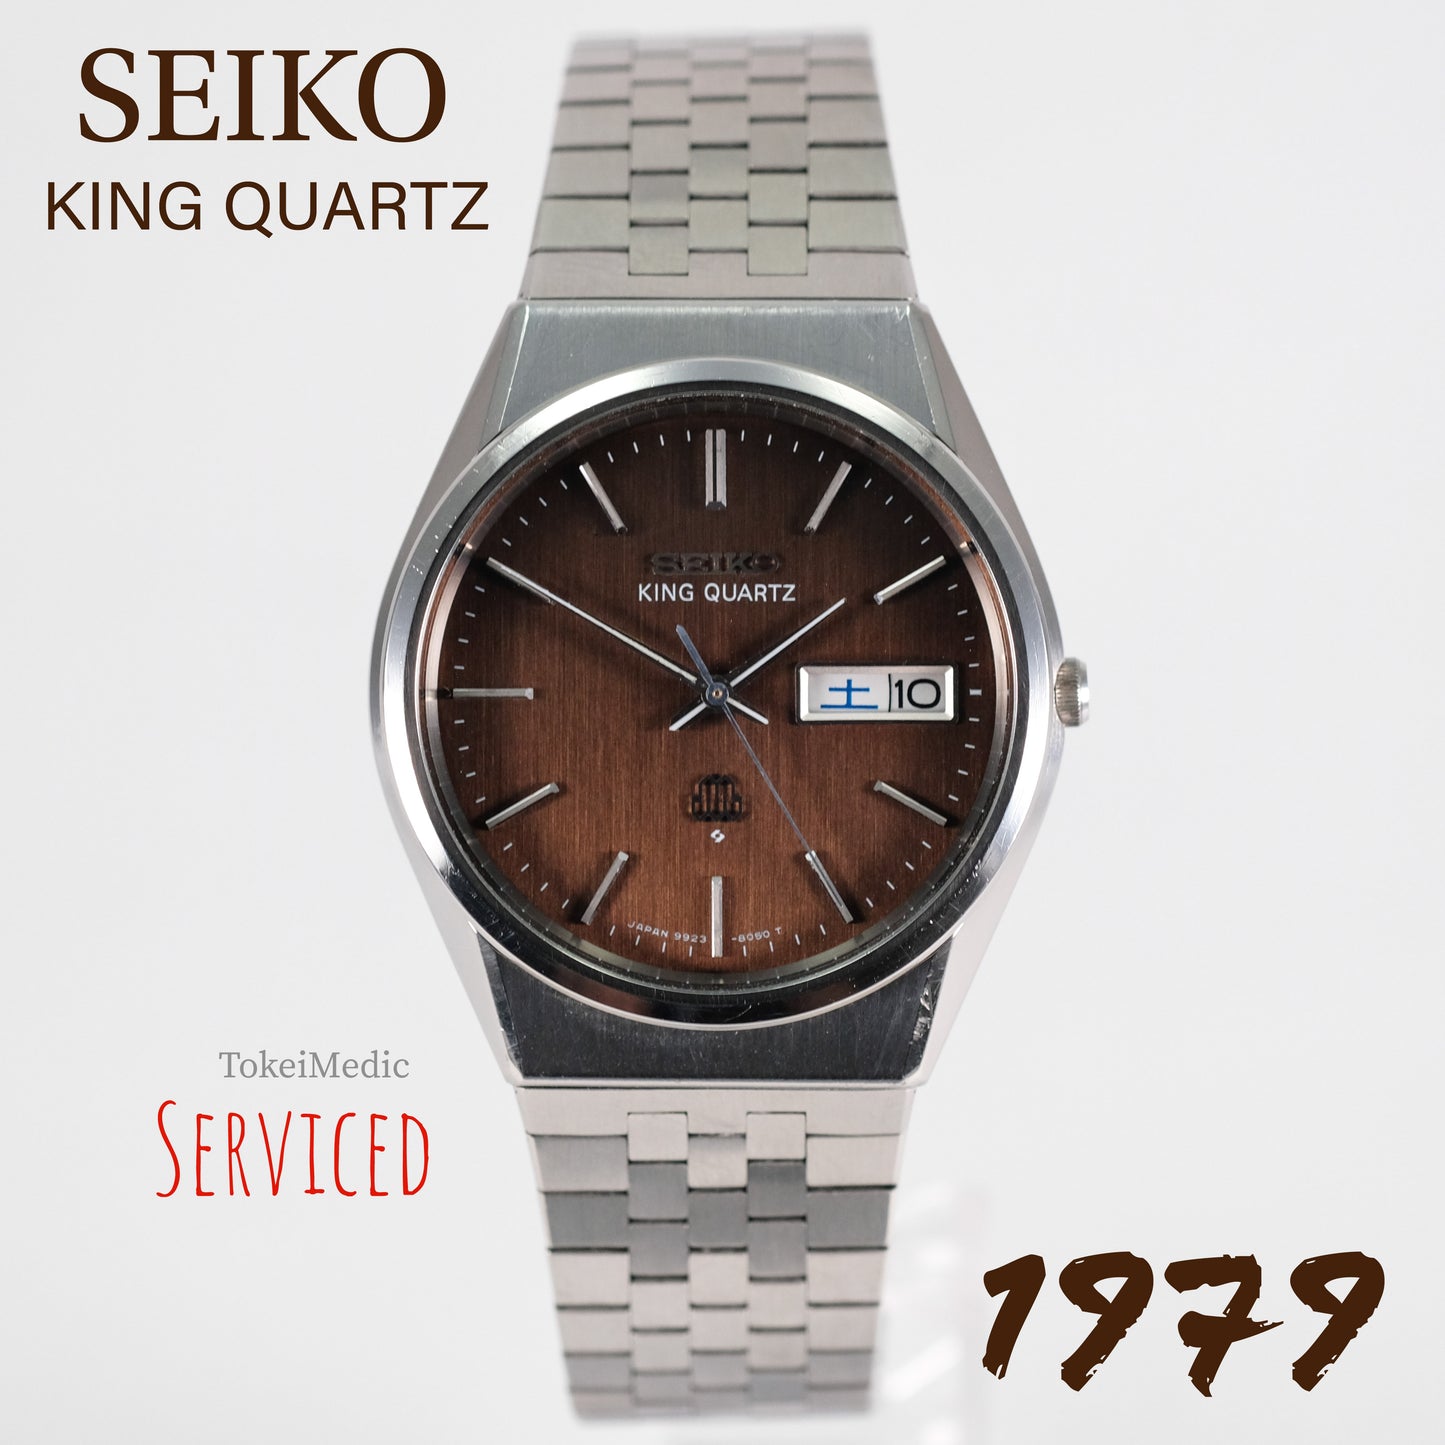 1979 Seiko King Quartz 9923-8050